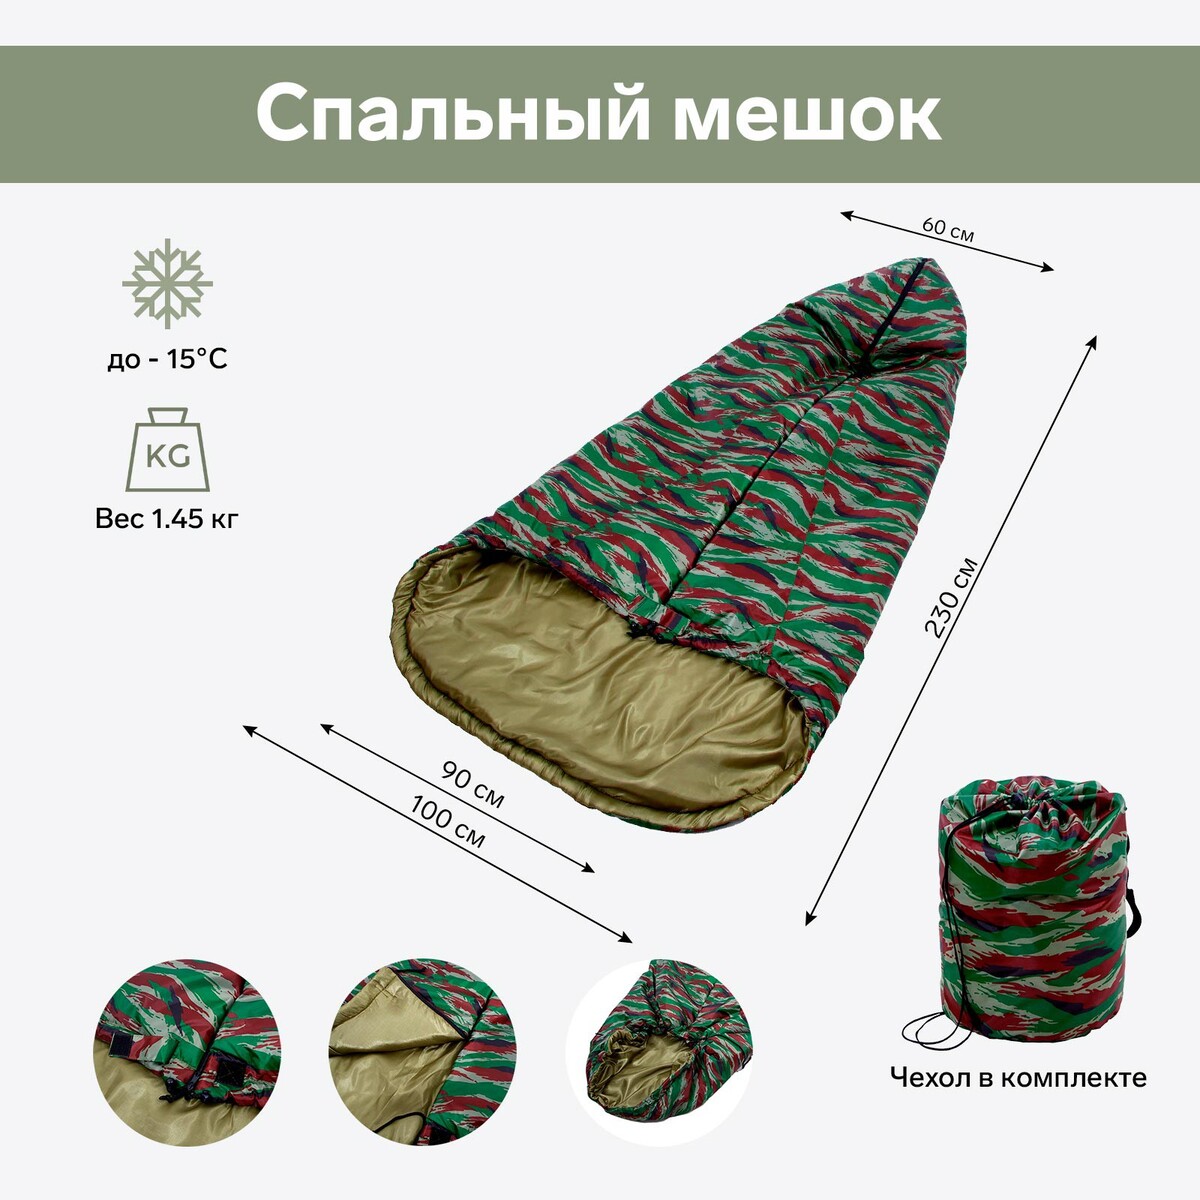 Спальный мешок, цвет камуфляж спальный мешок carinthia tropen multicam